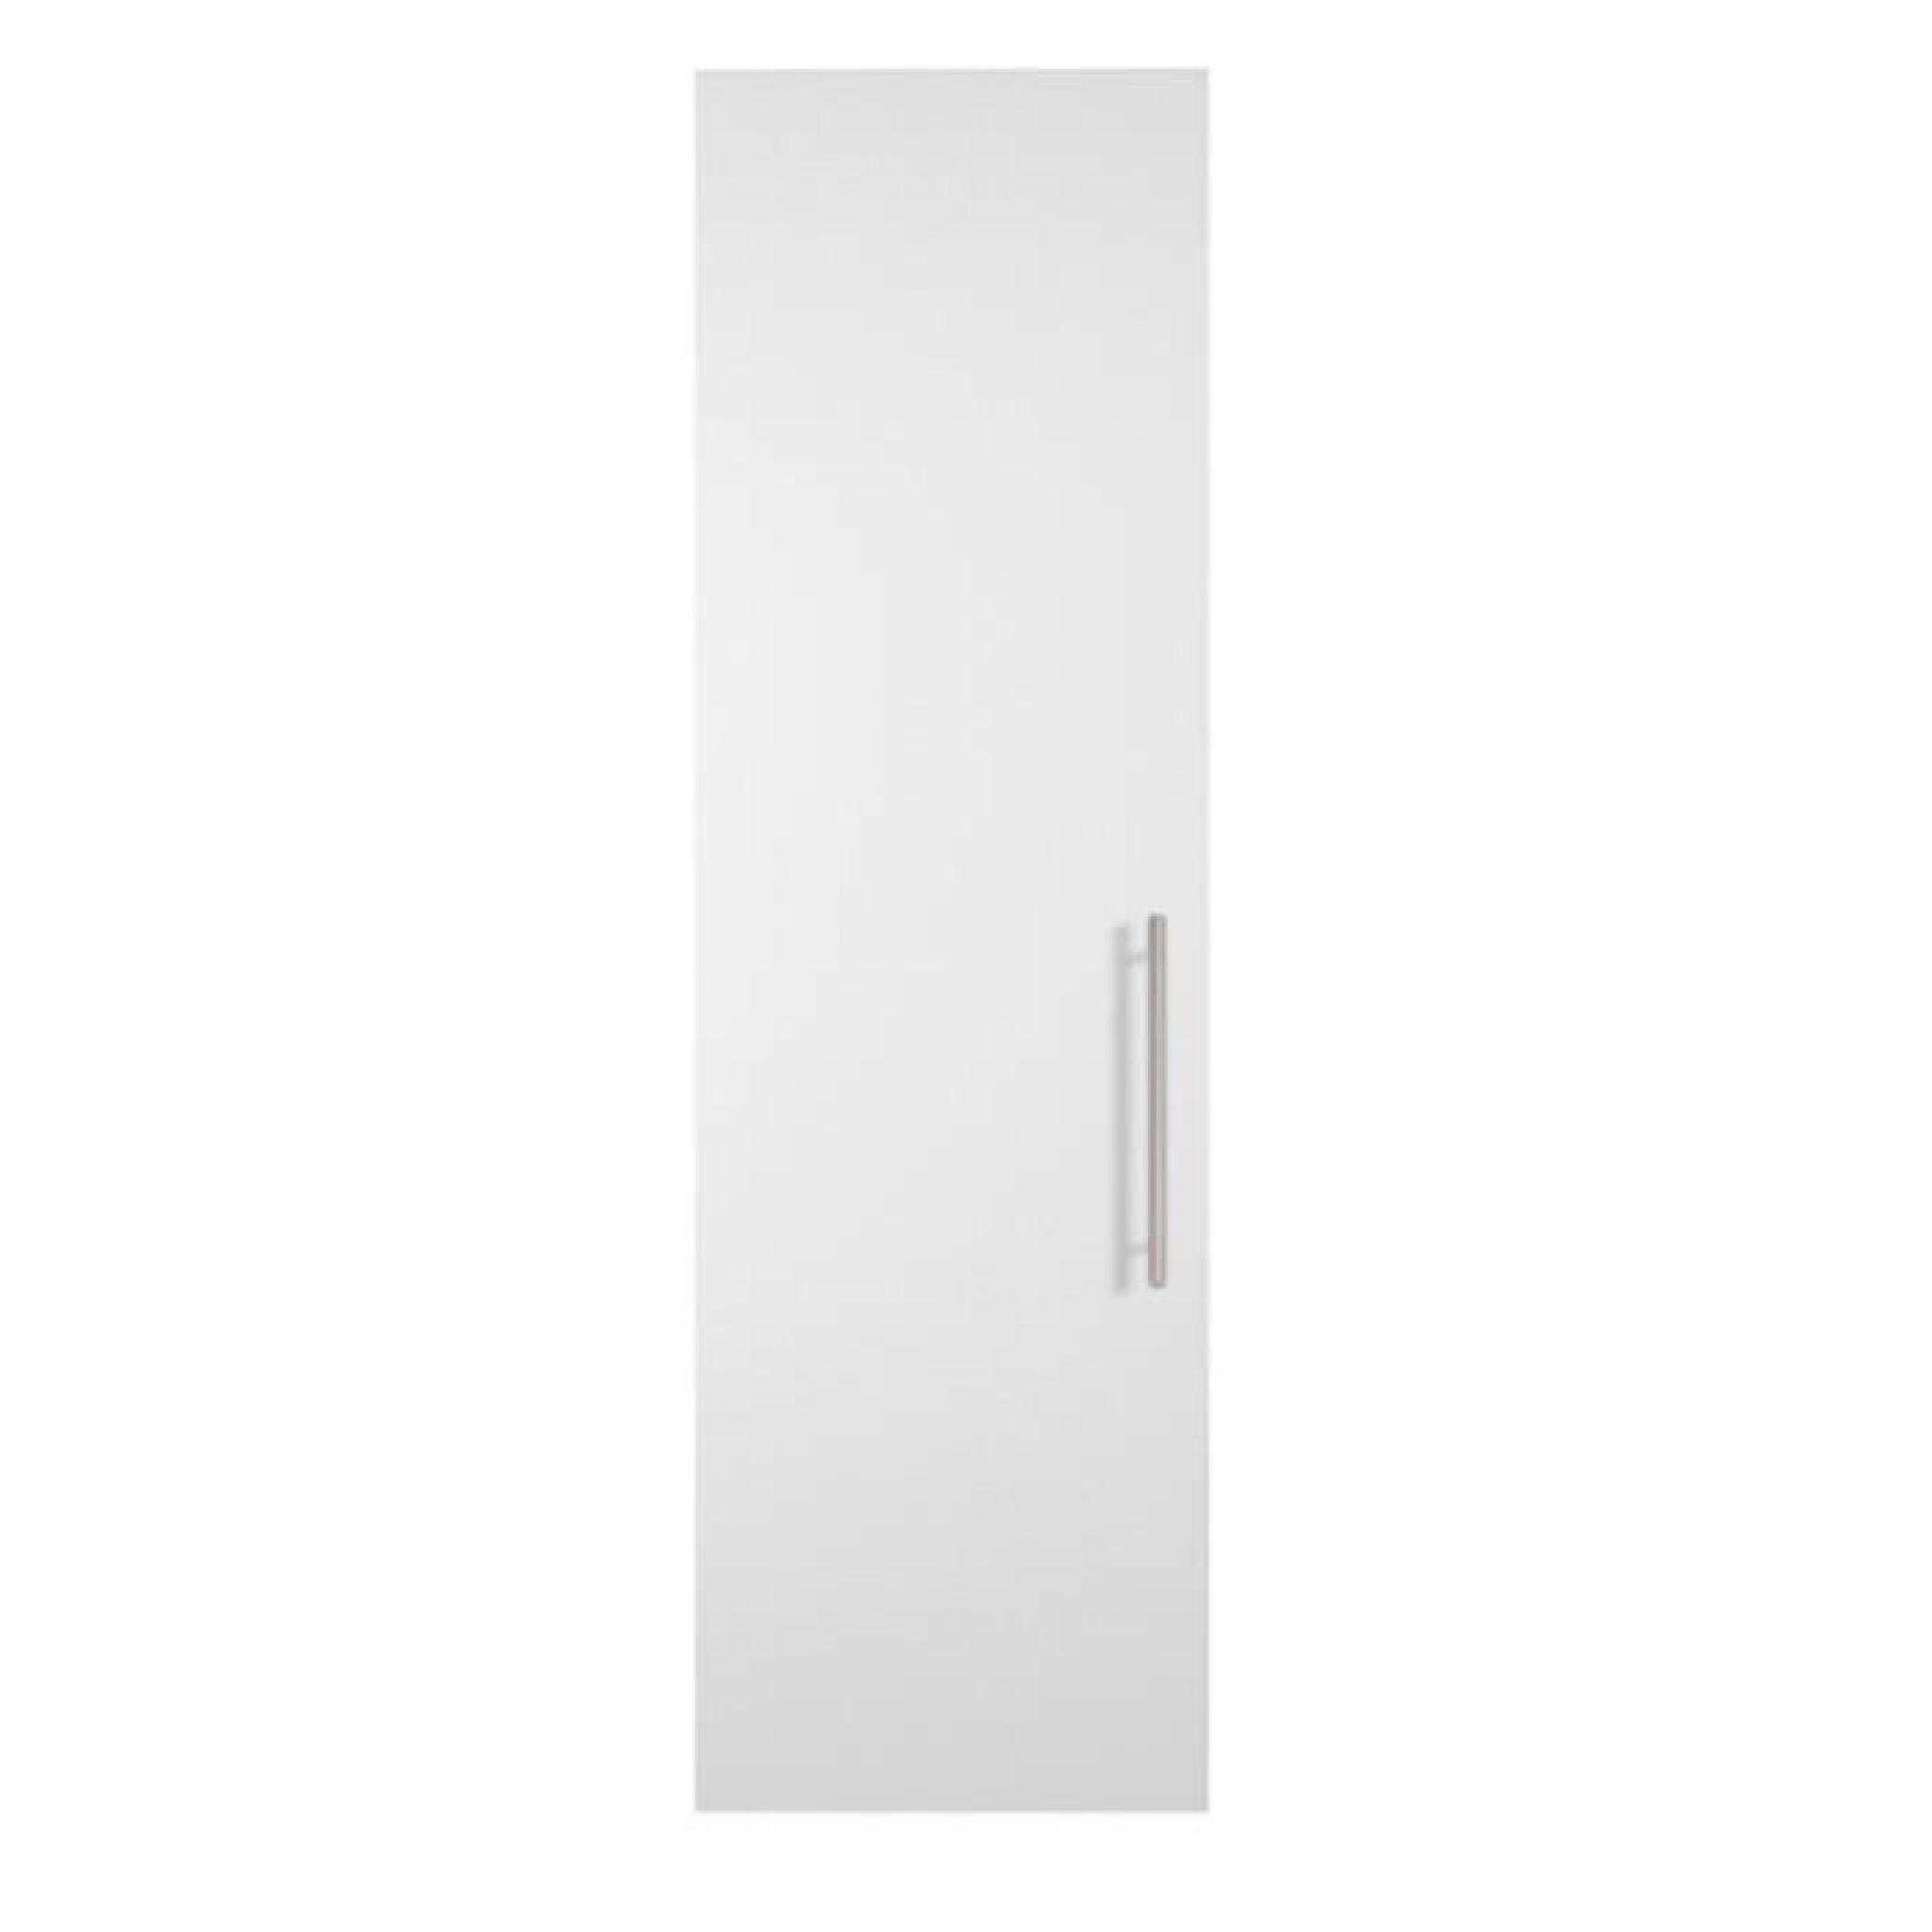 Porte battante coloris blanc brillant pour caisse de dressing - Dim : H 228 x L 49 x P 1 cm